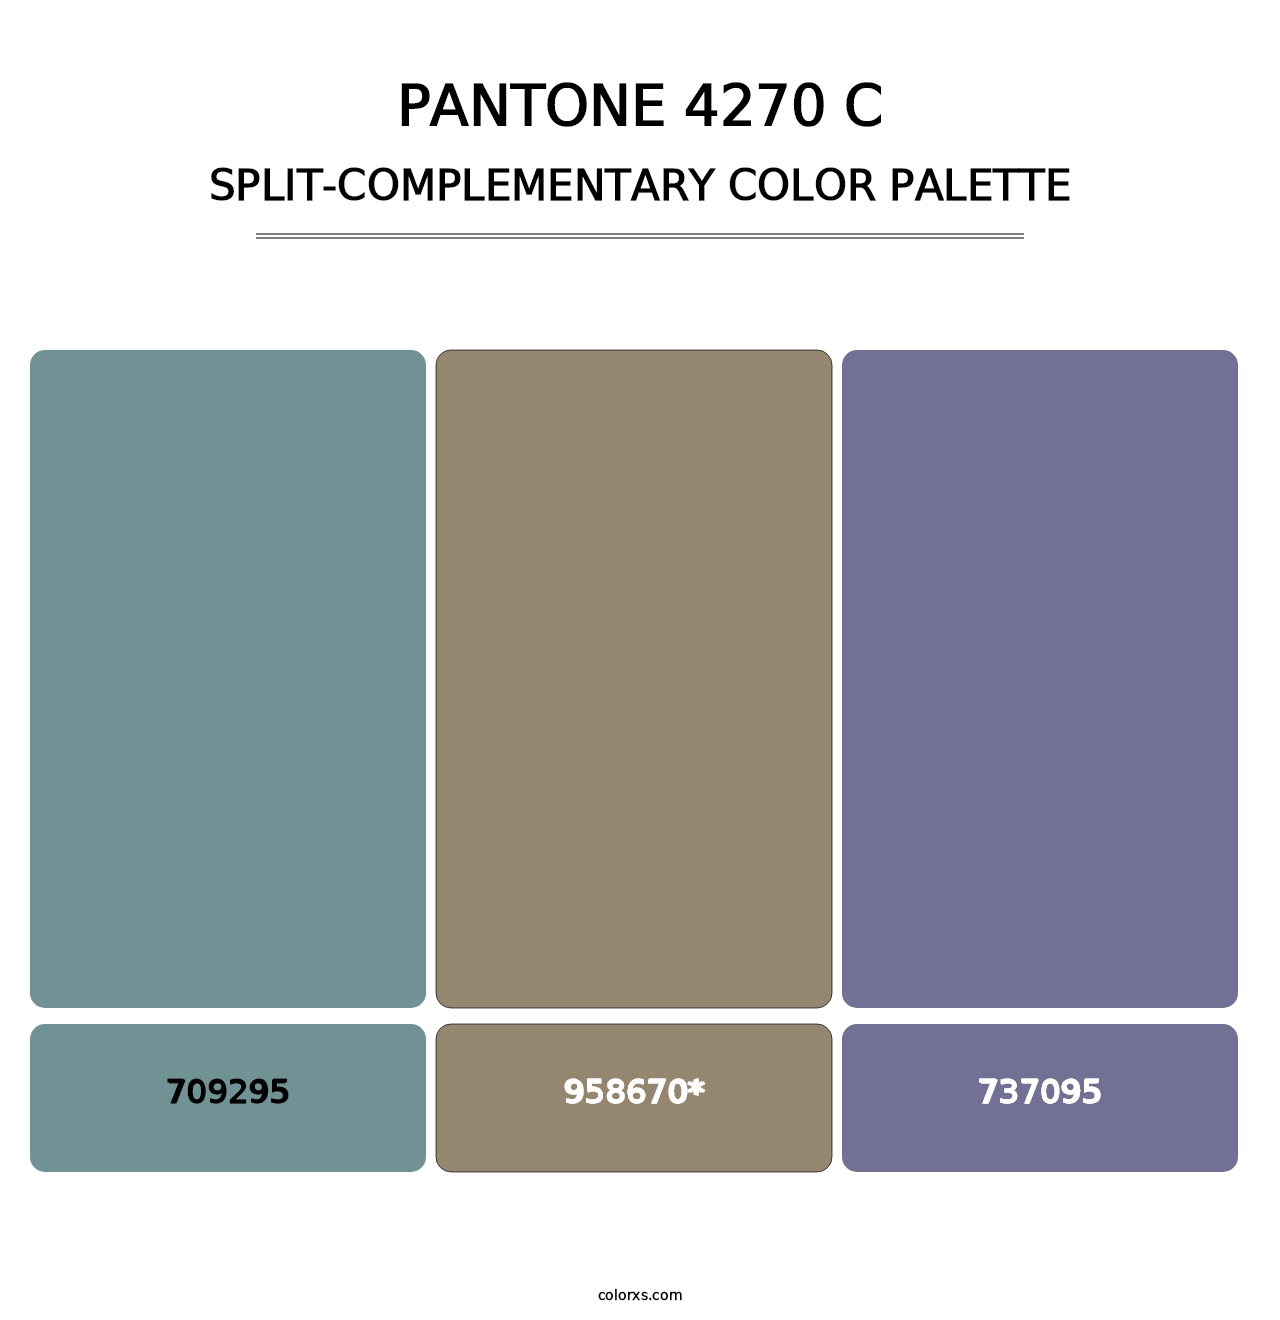 PANTONE 4270 C - Split-Complementary Color Palette